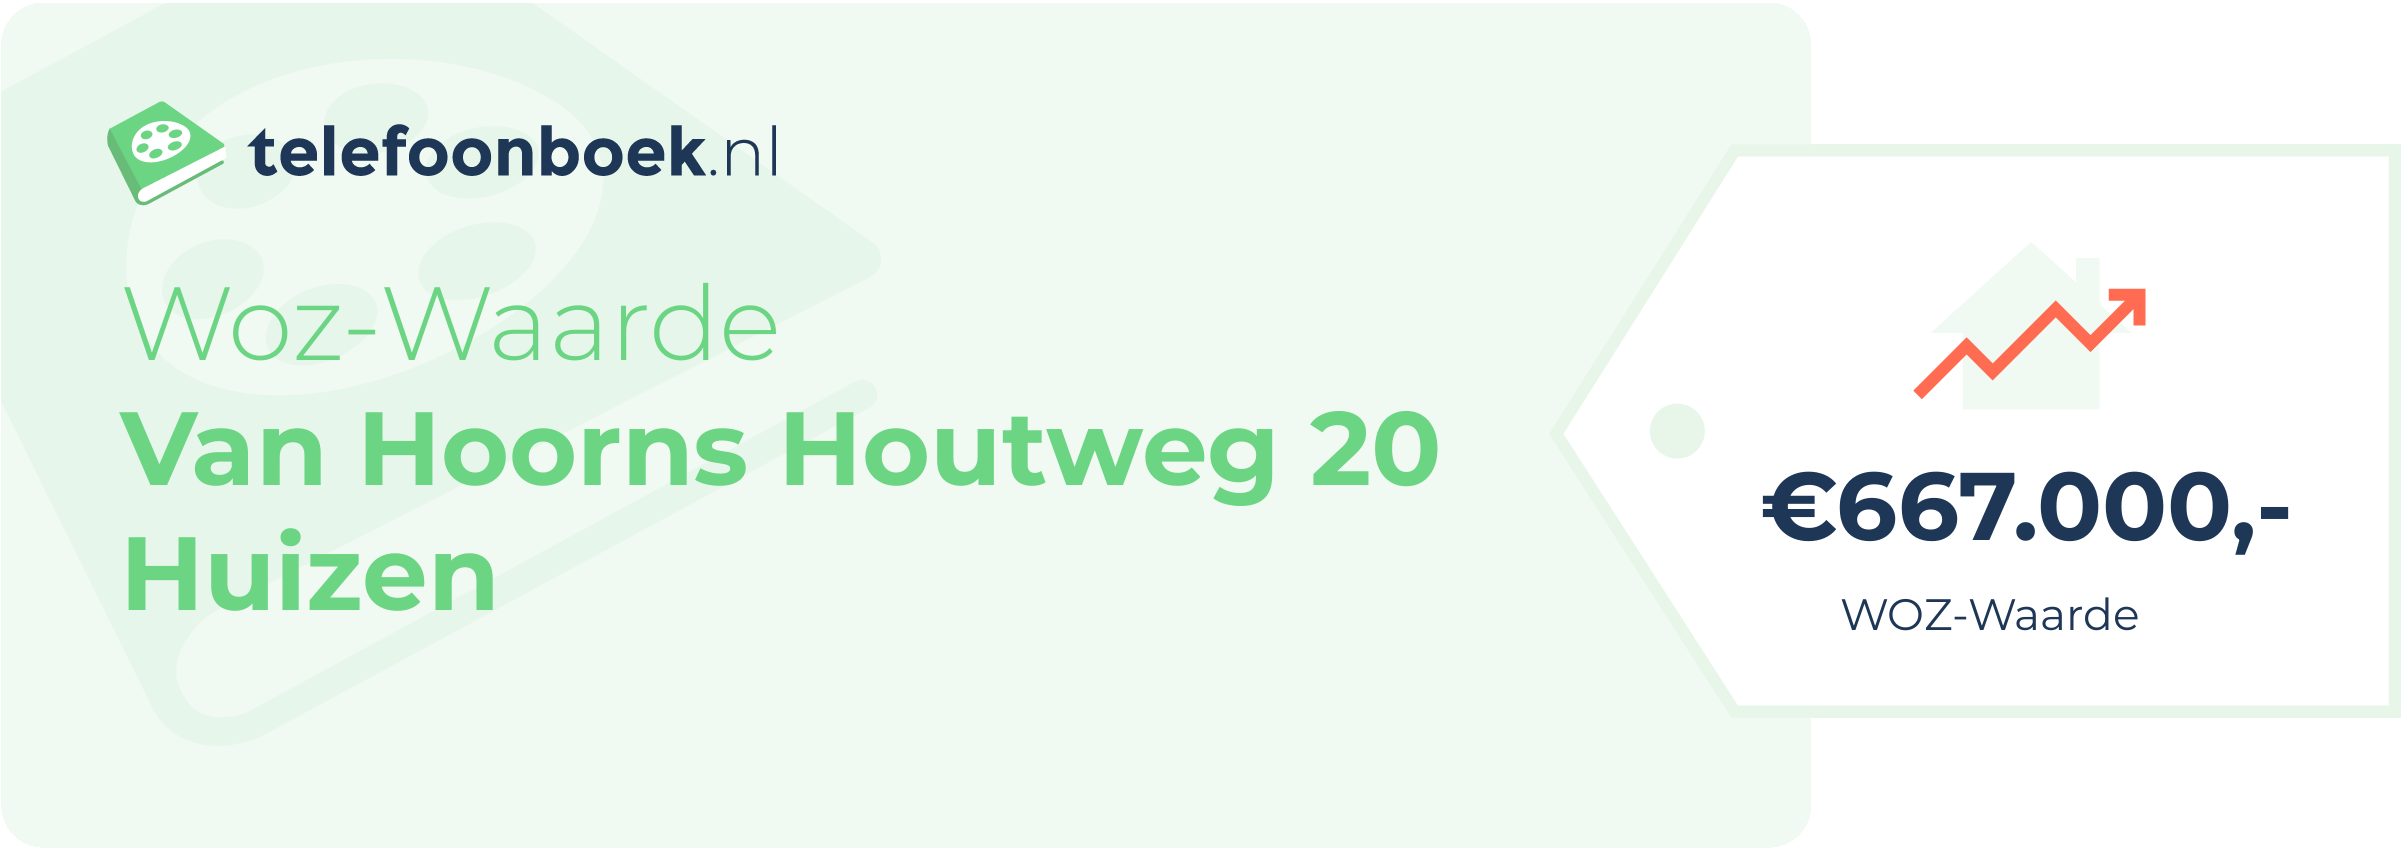 WOZ-waarde Van Hoorns Houtweg 20 Huizen